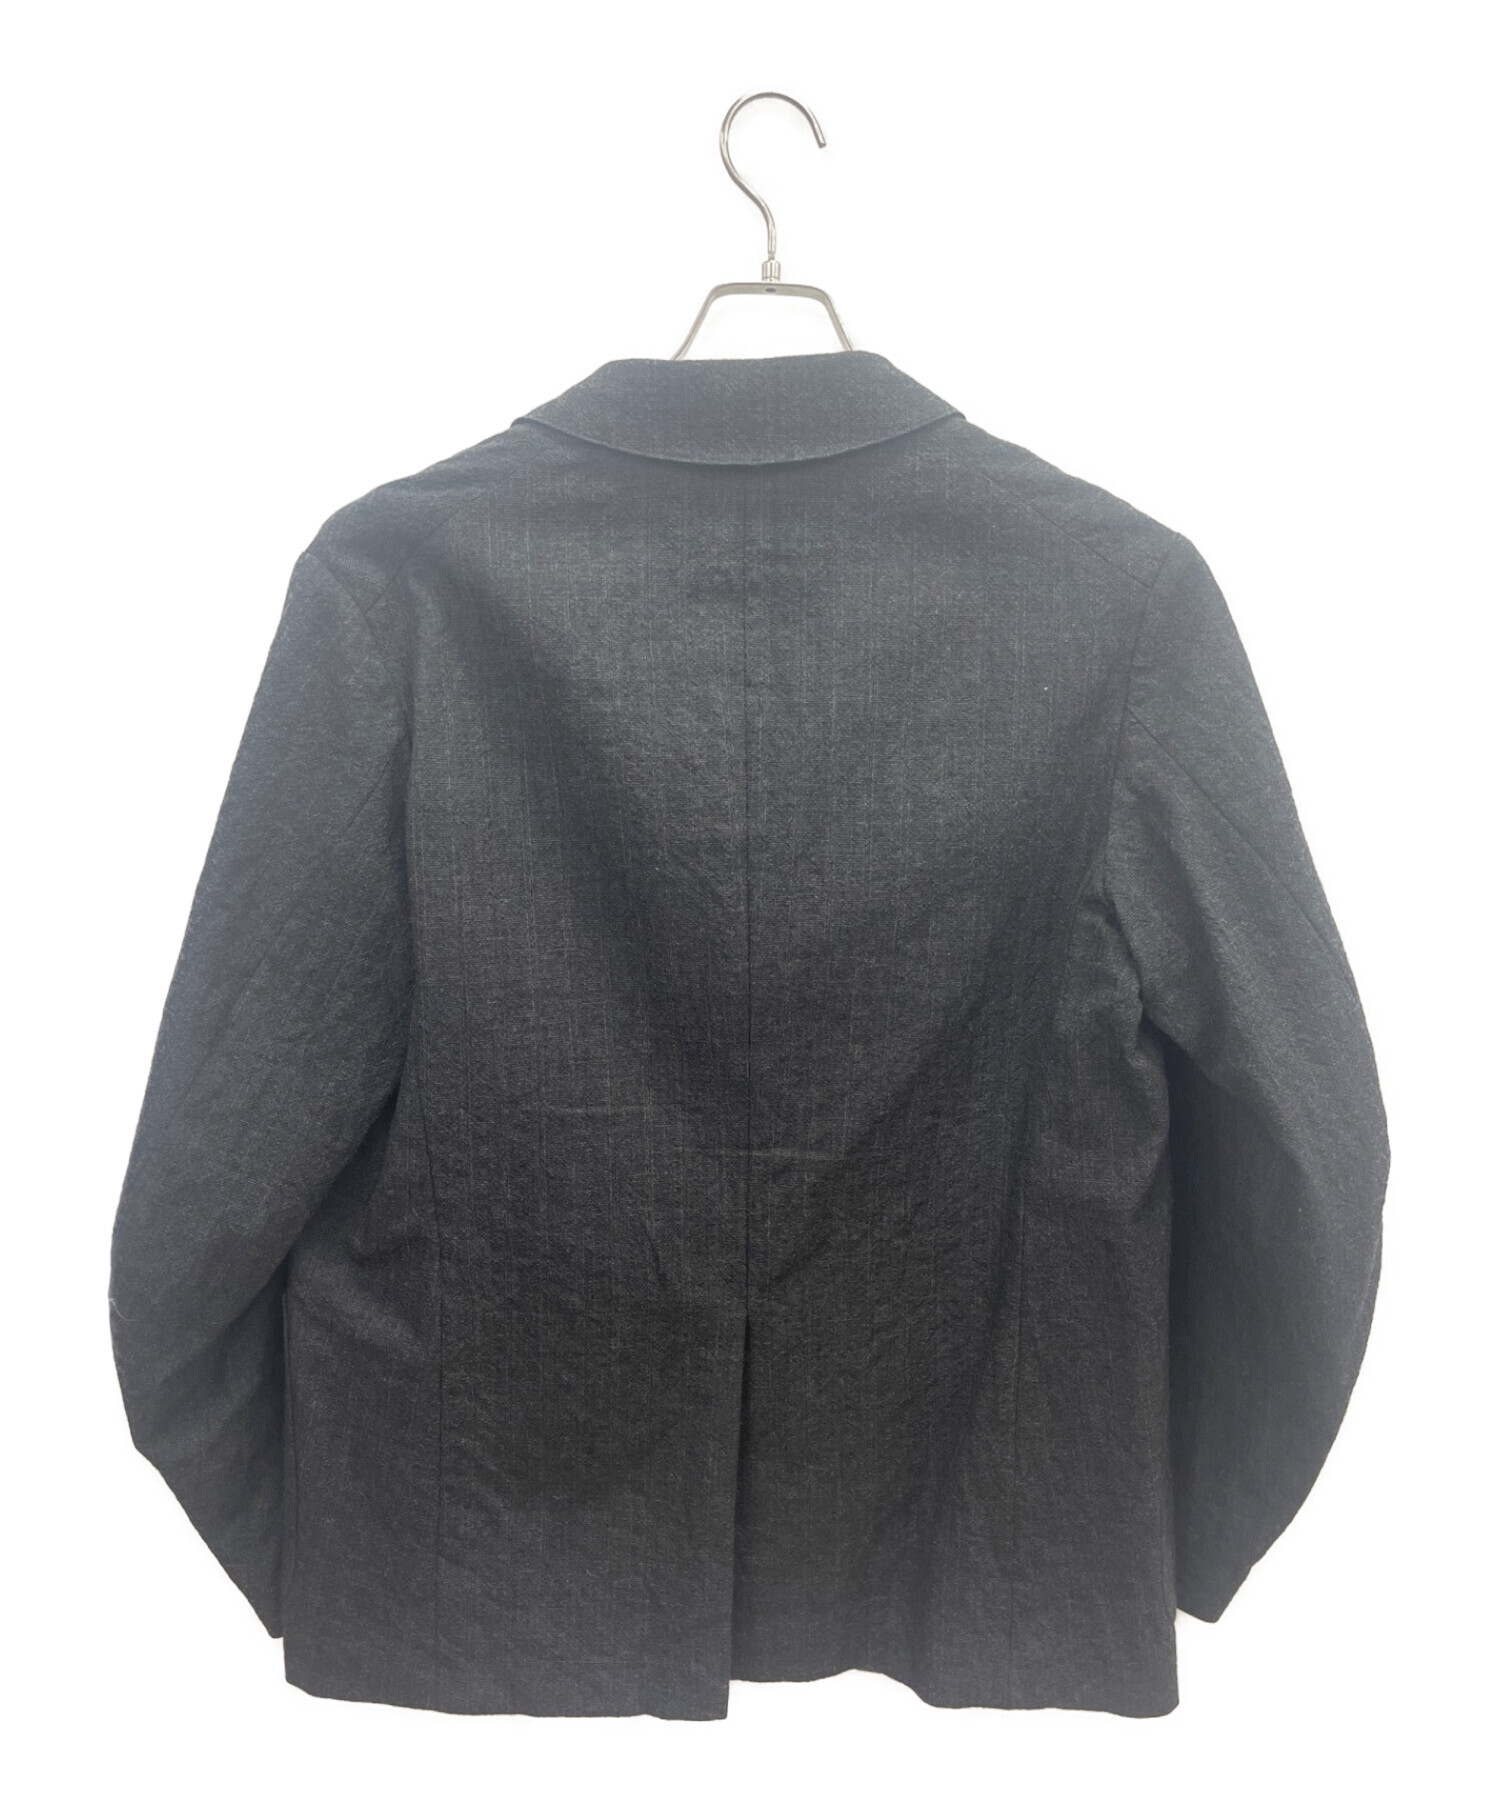 KAPTAIN SUNSHINE (キャプテンサンシャイン) テーラードジャケット チャコールグレー サイズ:38